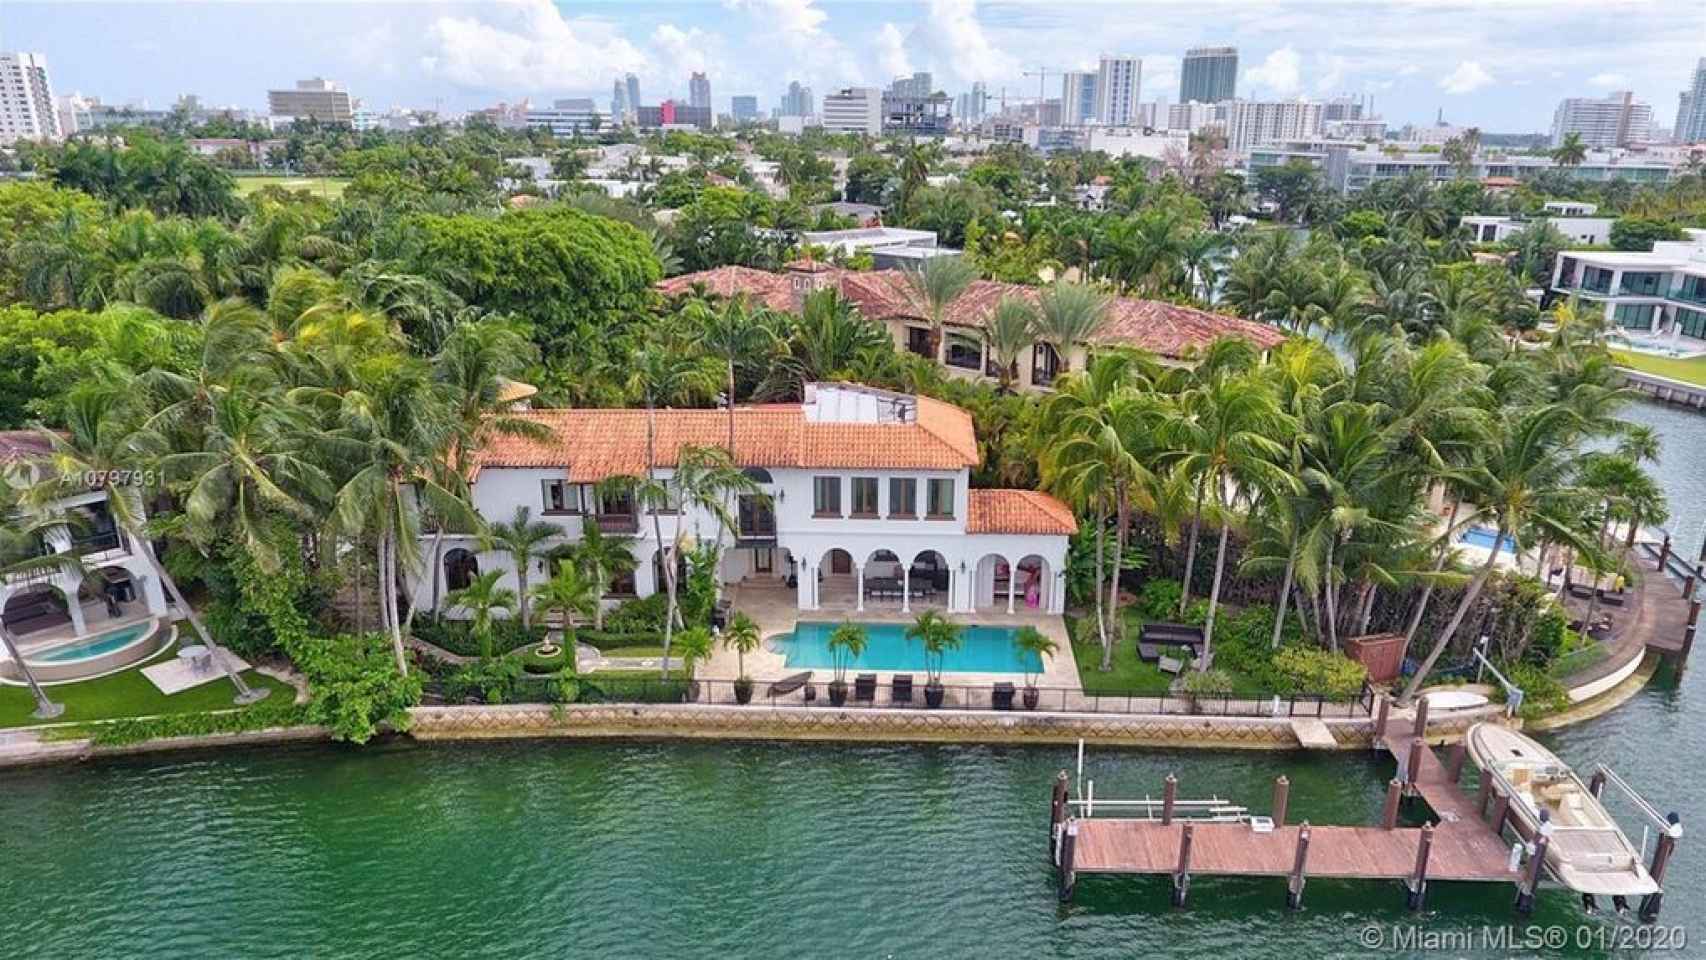 Vista exterior de la mansión de Alejandro Sanz en Miami.